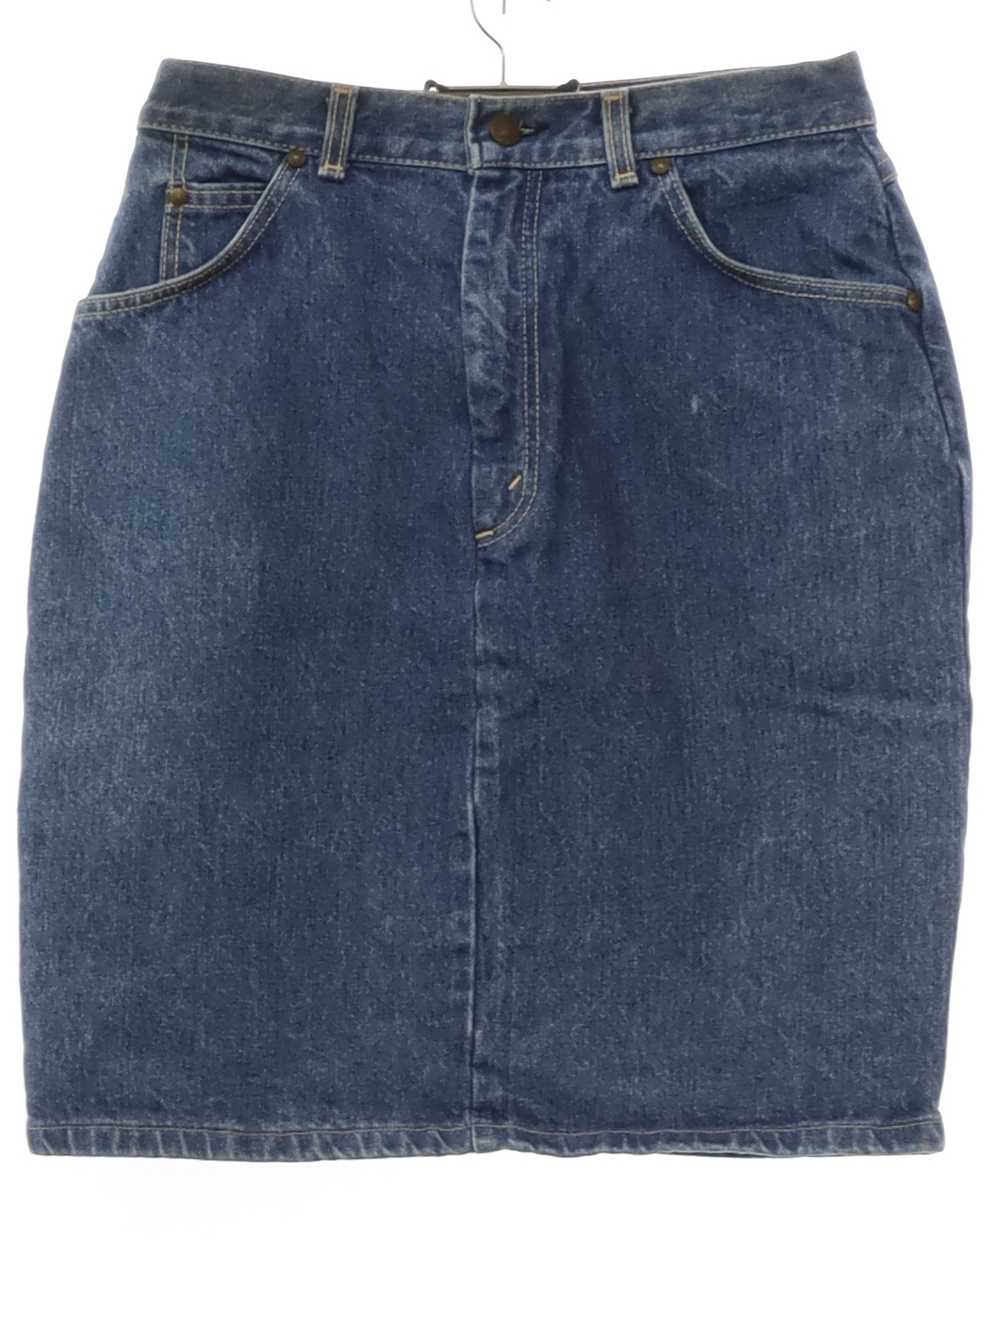 1980's Levis USA Levis Denim Jeans Skirt - image 1